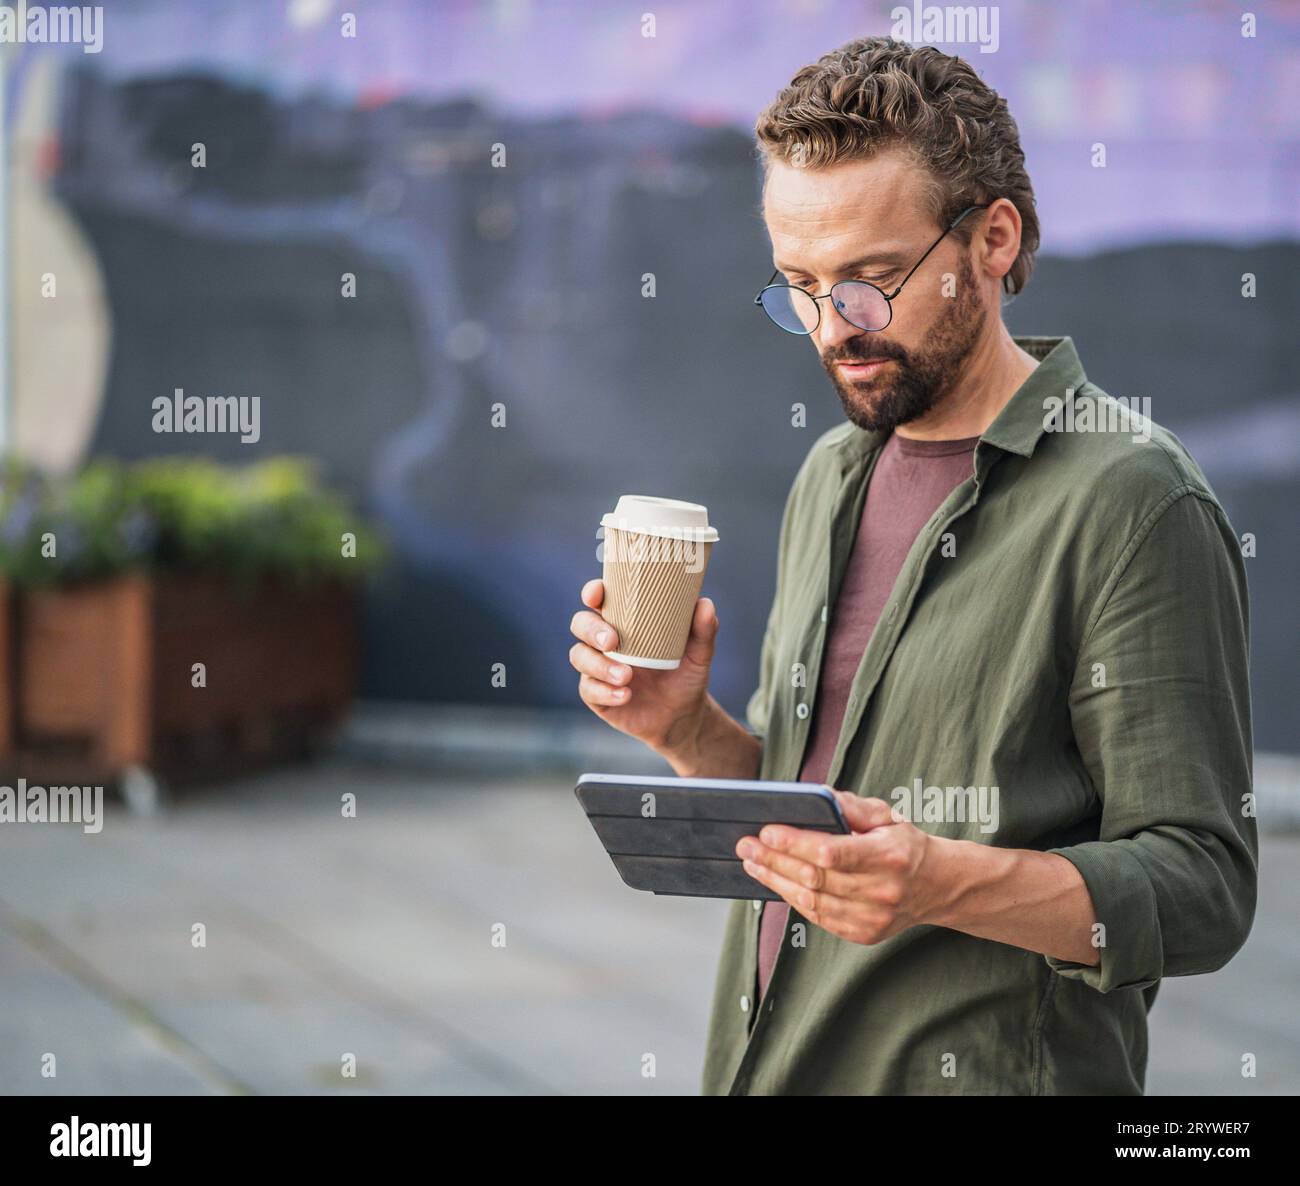 Uomo che si gode una pausa caffè all'aperto mentre legge informazioni dal suo tablet PC. L'atmosfera rilassata e serena si completa Foto Stock